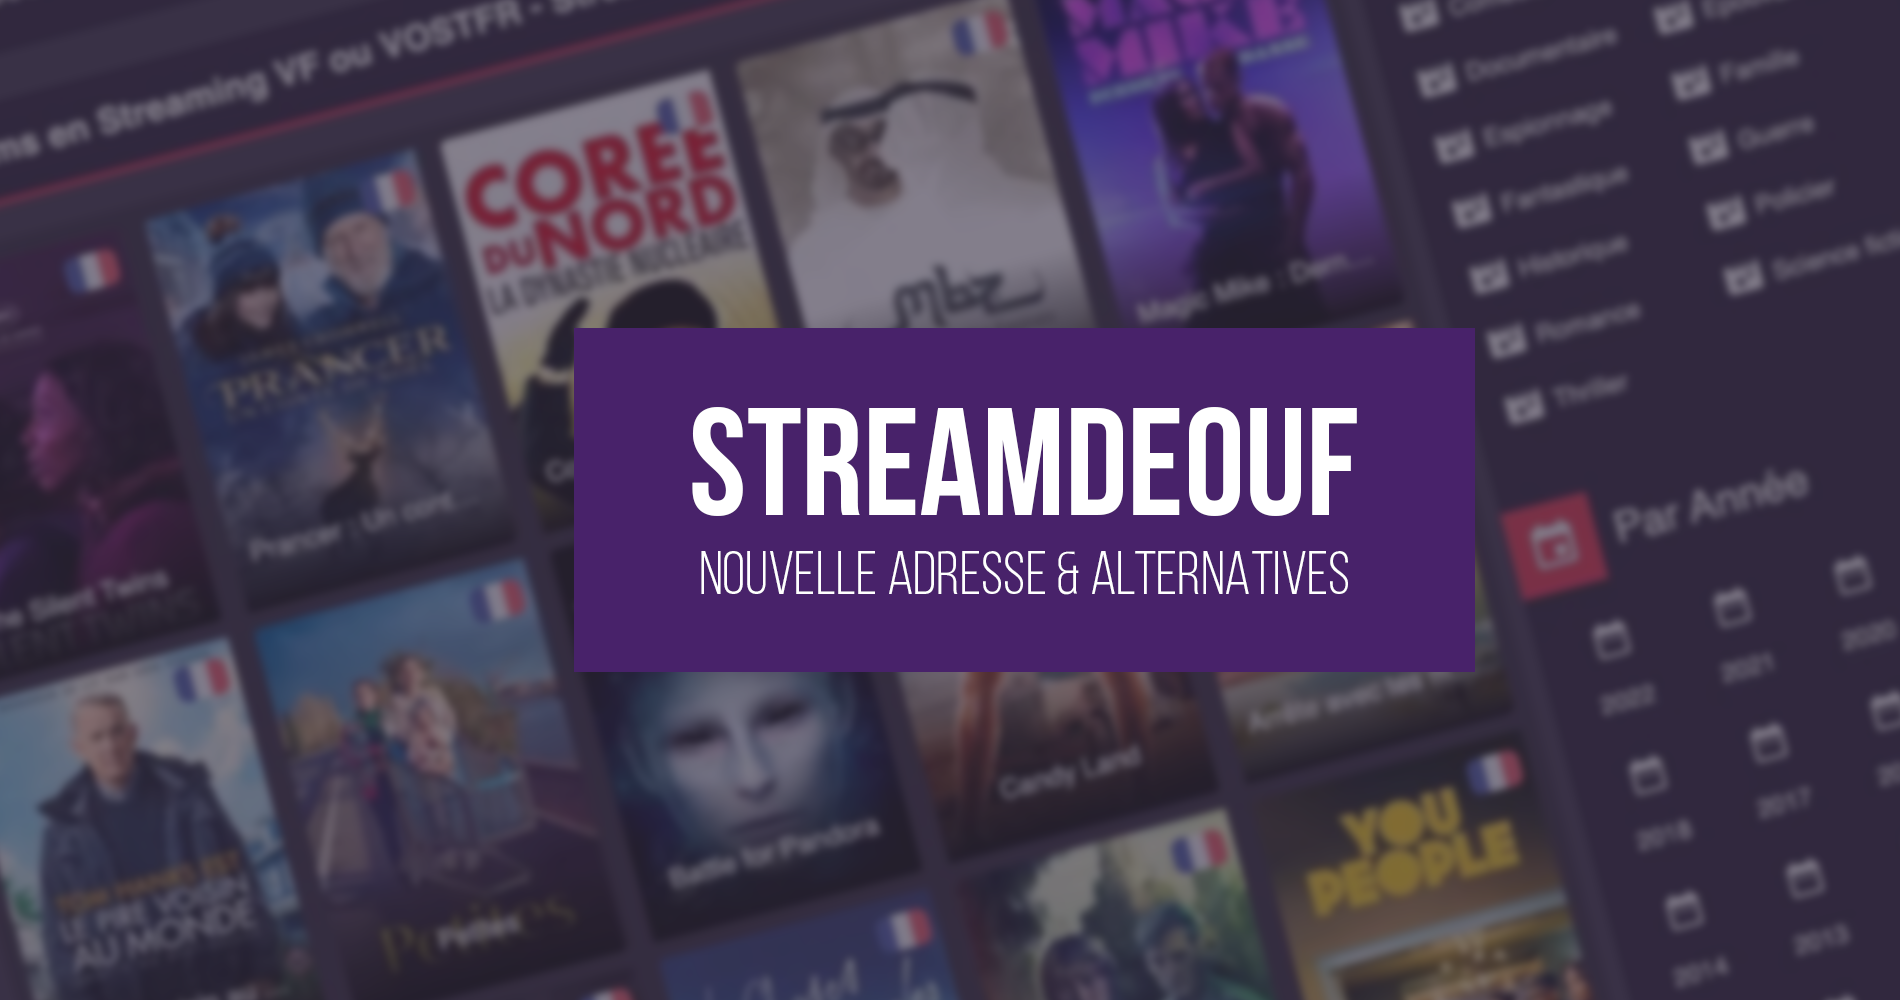 Streamdeouf: новый официальный адрес и лучшие альтернативы потоковой передаче фильмов и сериалов